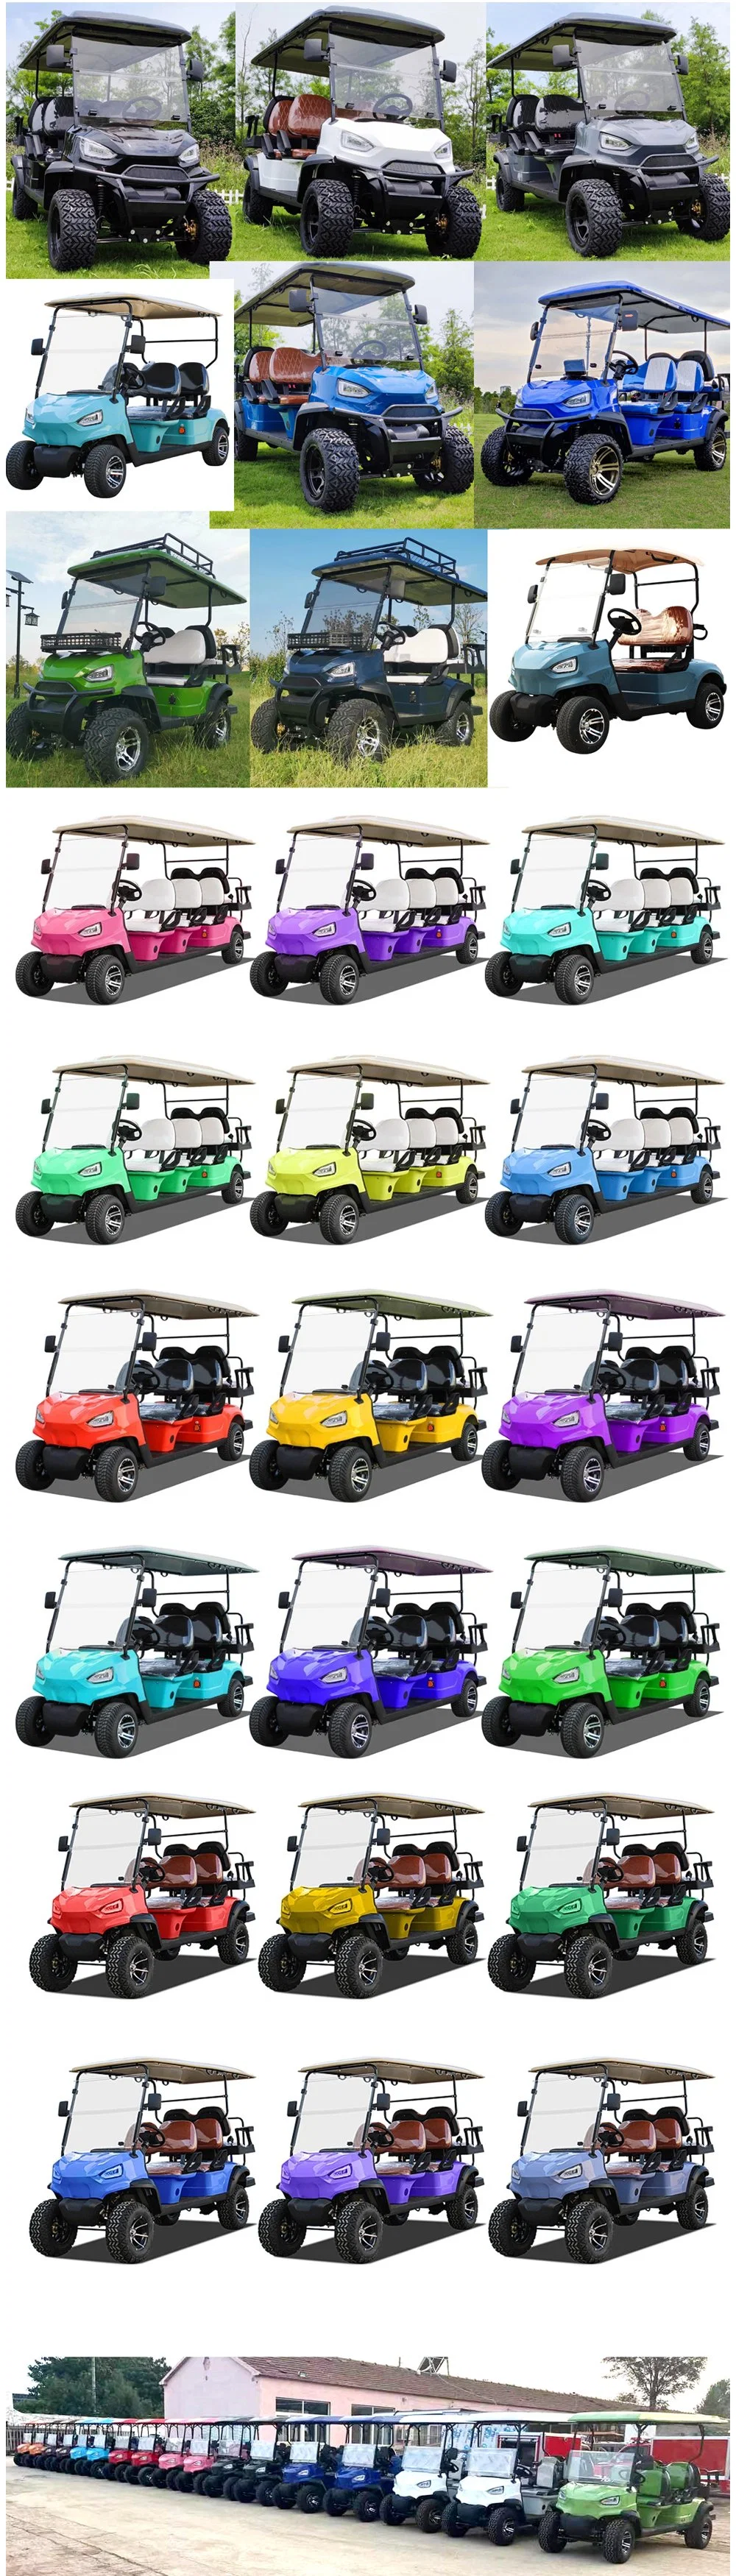 Street Legal Golf Club Car Sightseeing Bus Mini Electric Golf Car Electric 2 4 Seats Golf Carts for Us